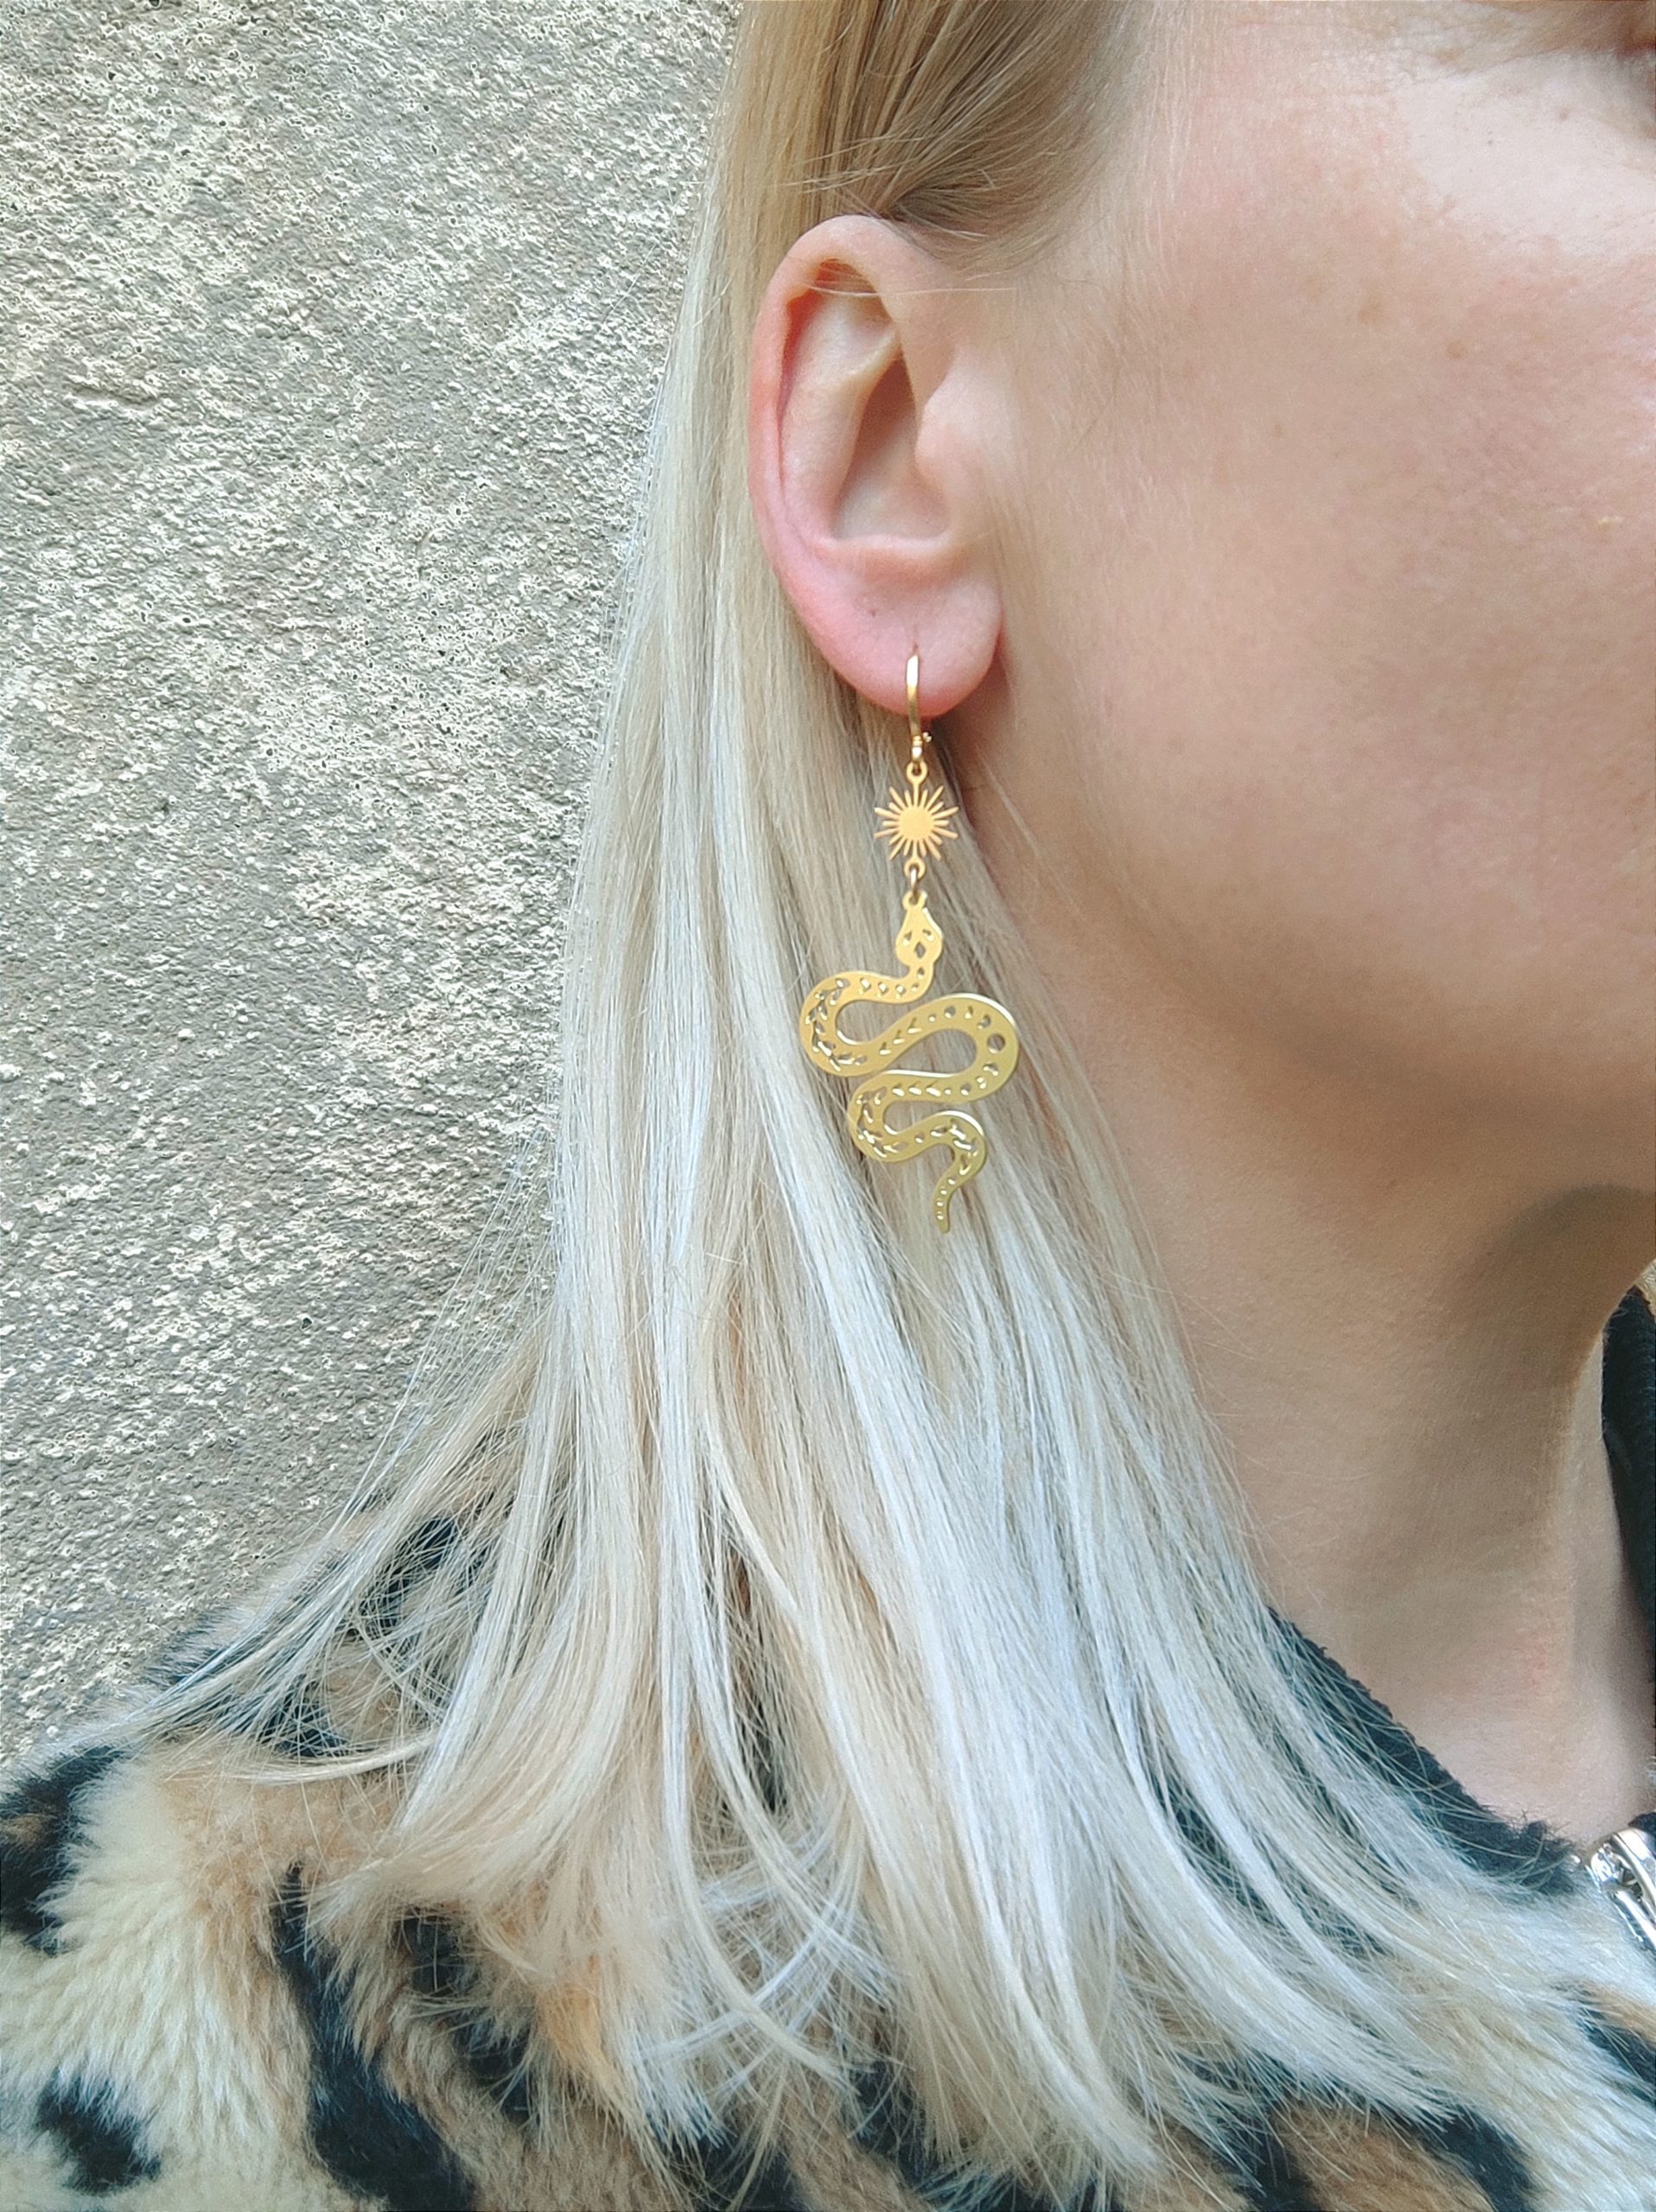 Femme qui porte des boucles d'oreilles dorées serpent